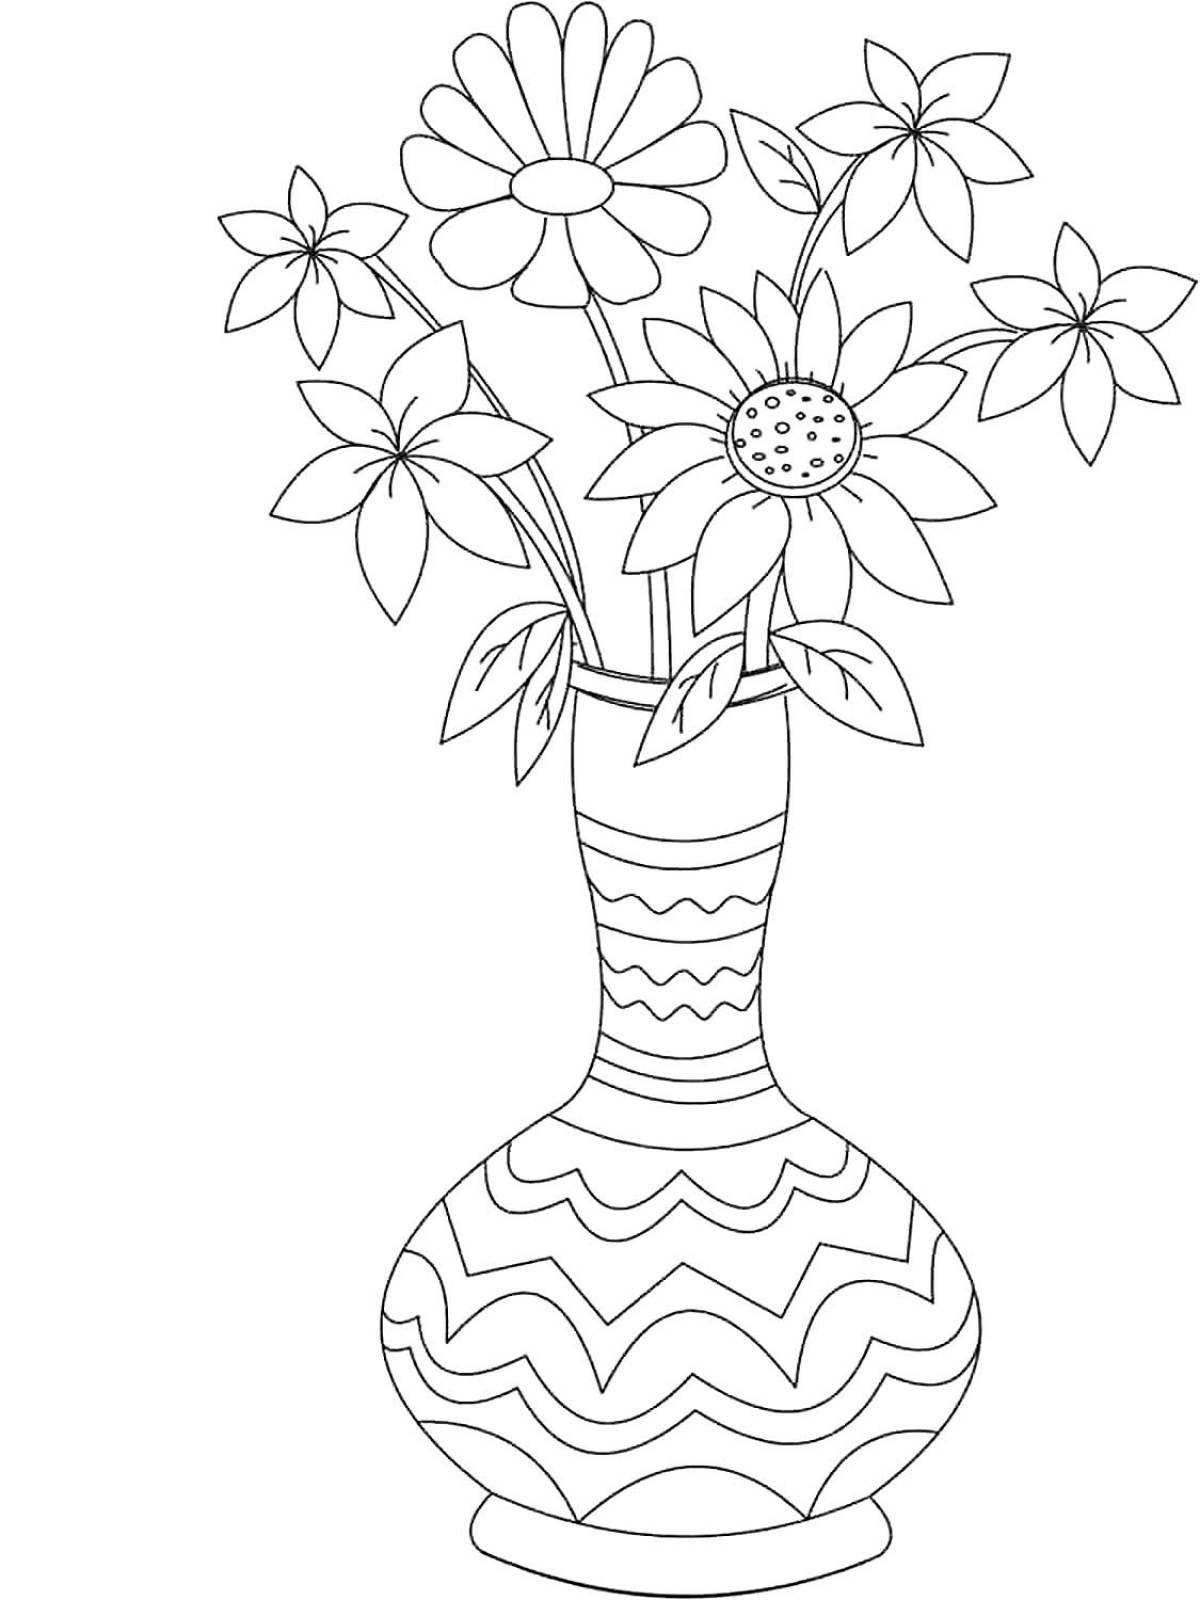 Vase of flowers for children #1